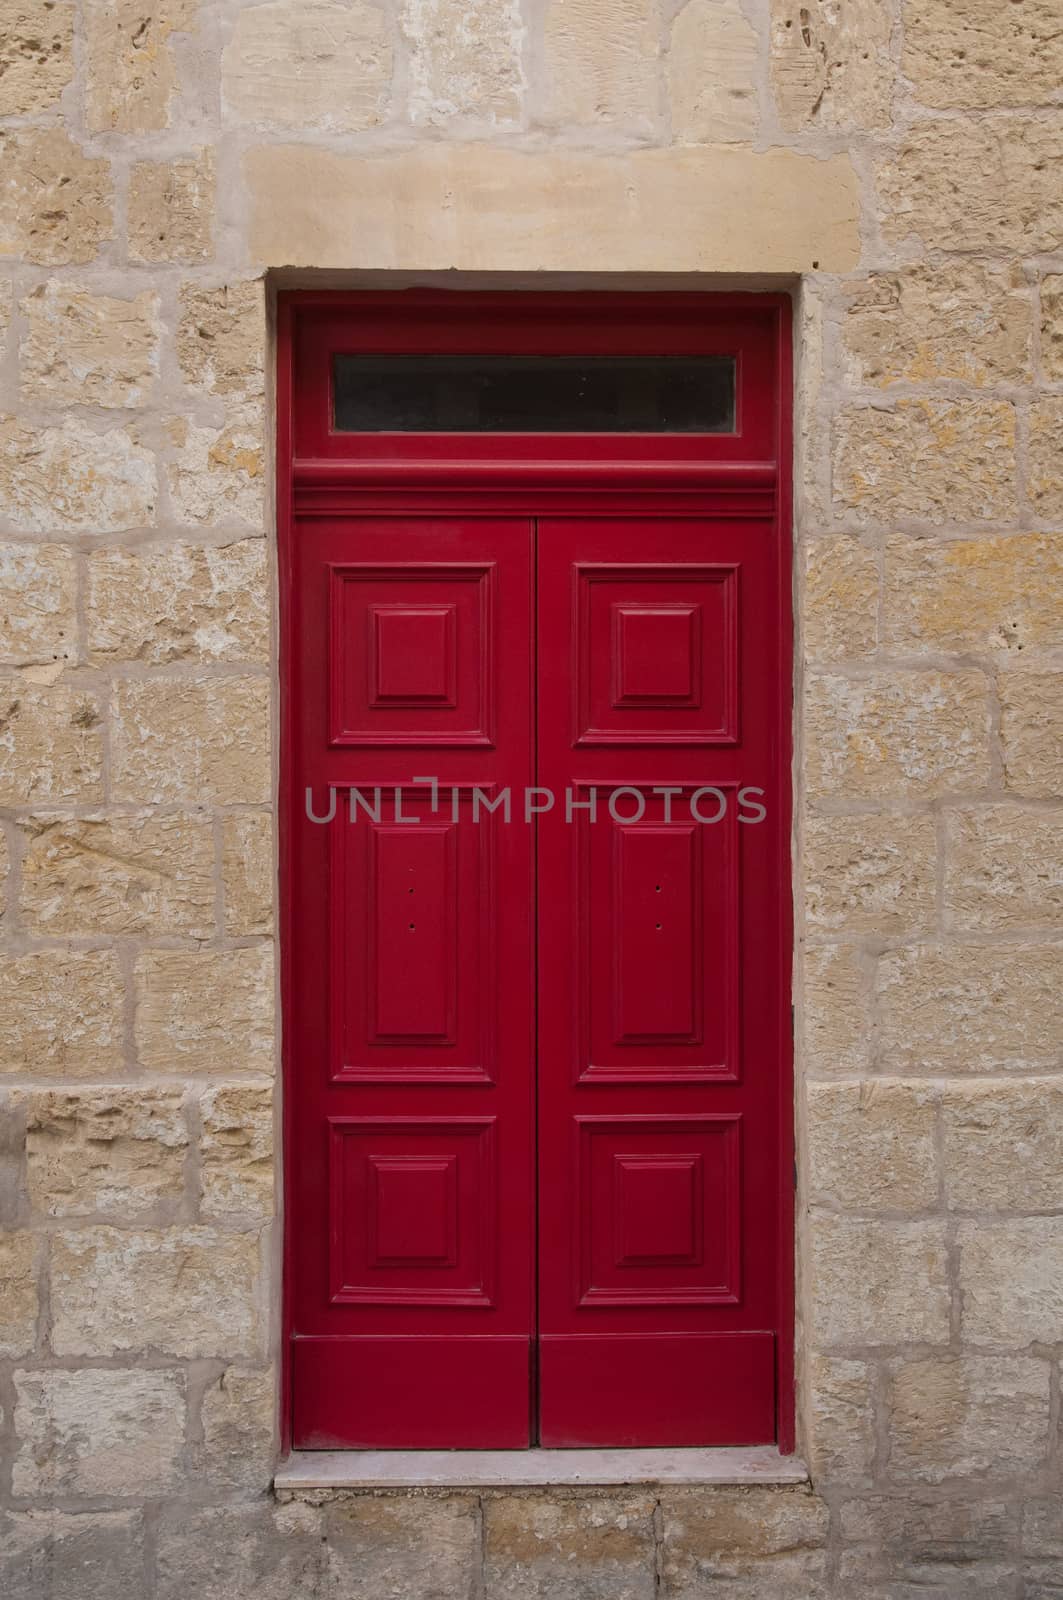 Fantastic ancient wooden door red